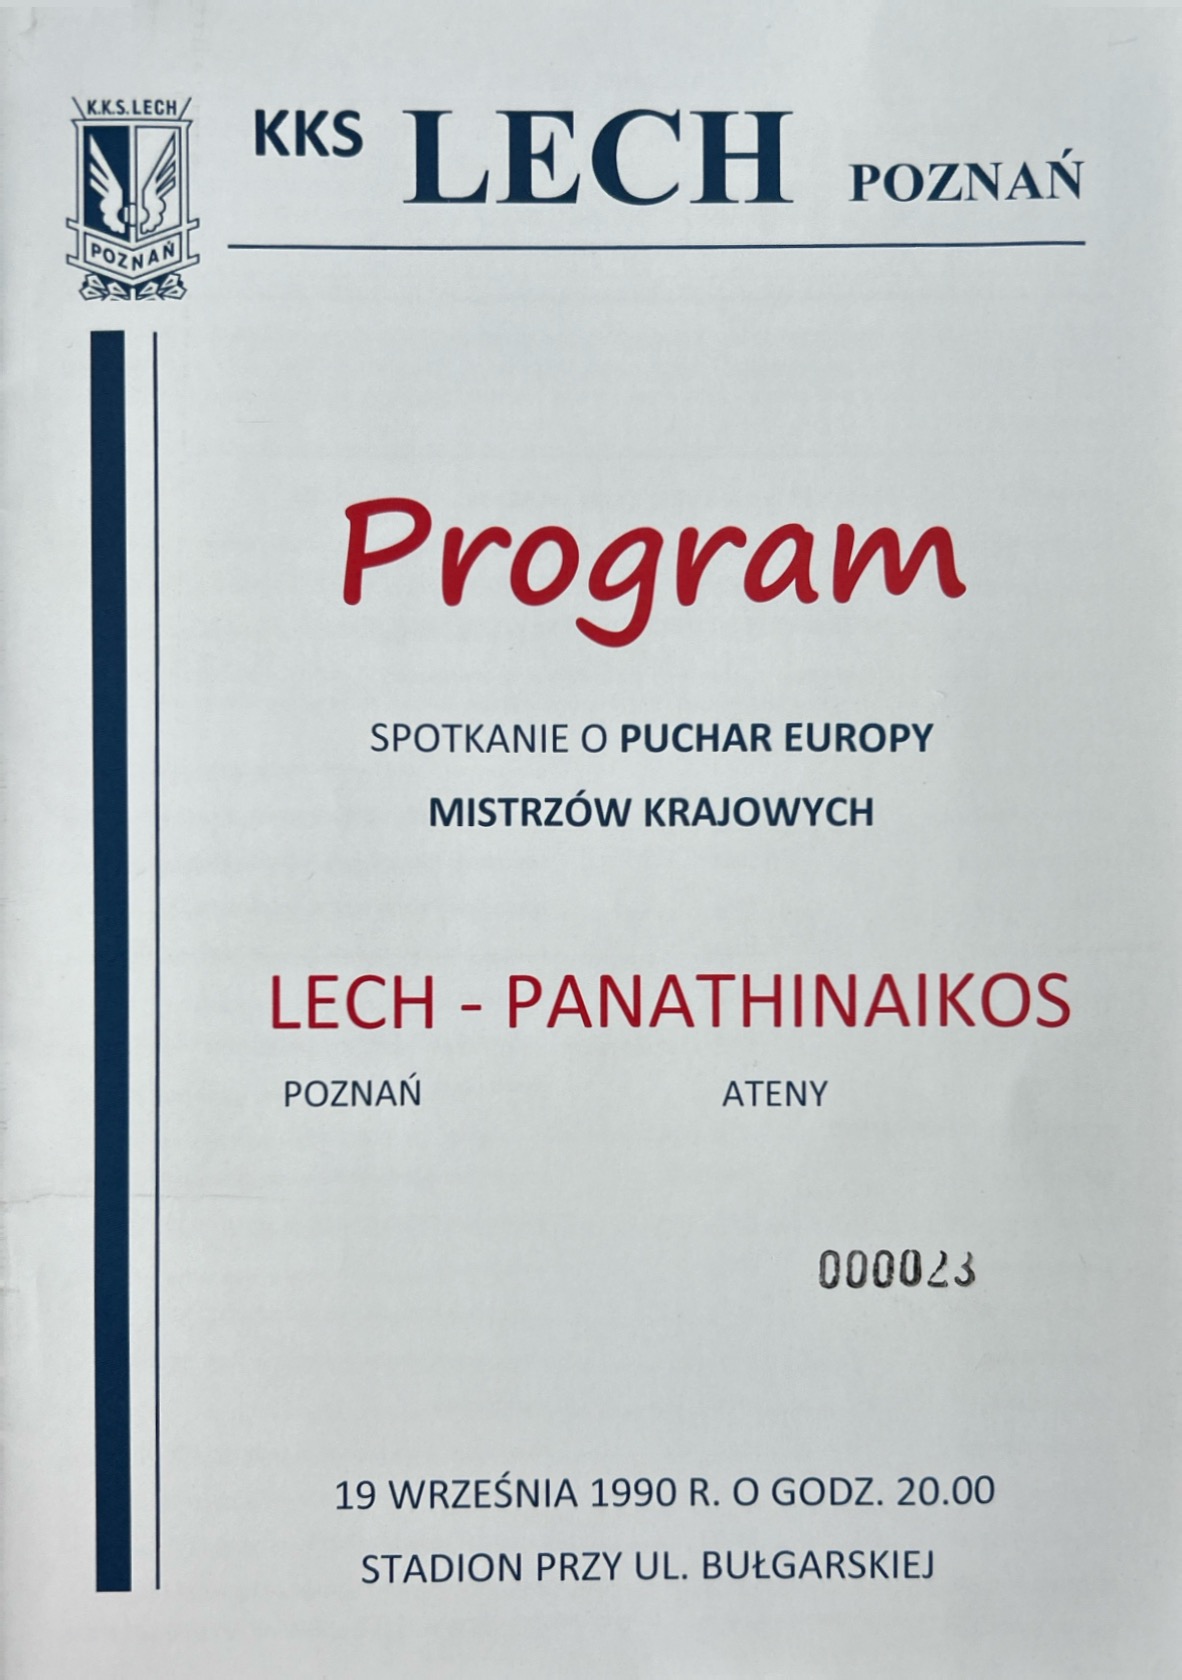 Program meczowy Lech Poznań - Panathinaikos Ateny 3:0 (19.09.1990)